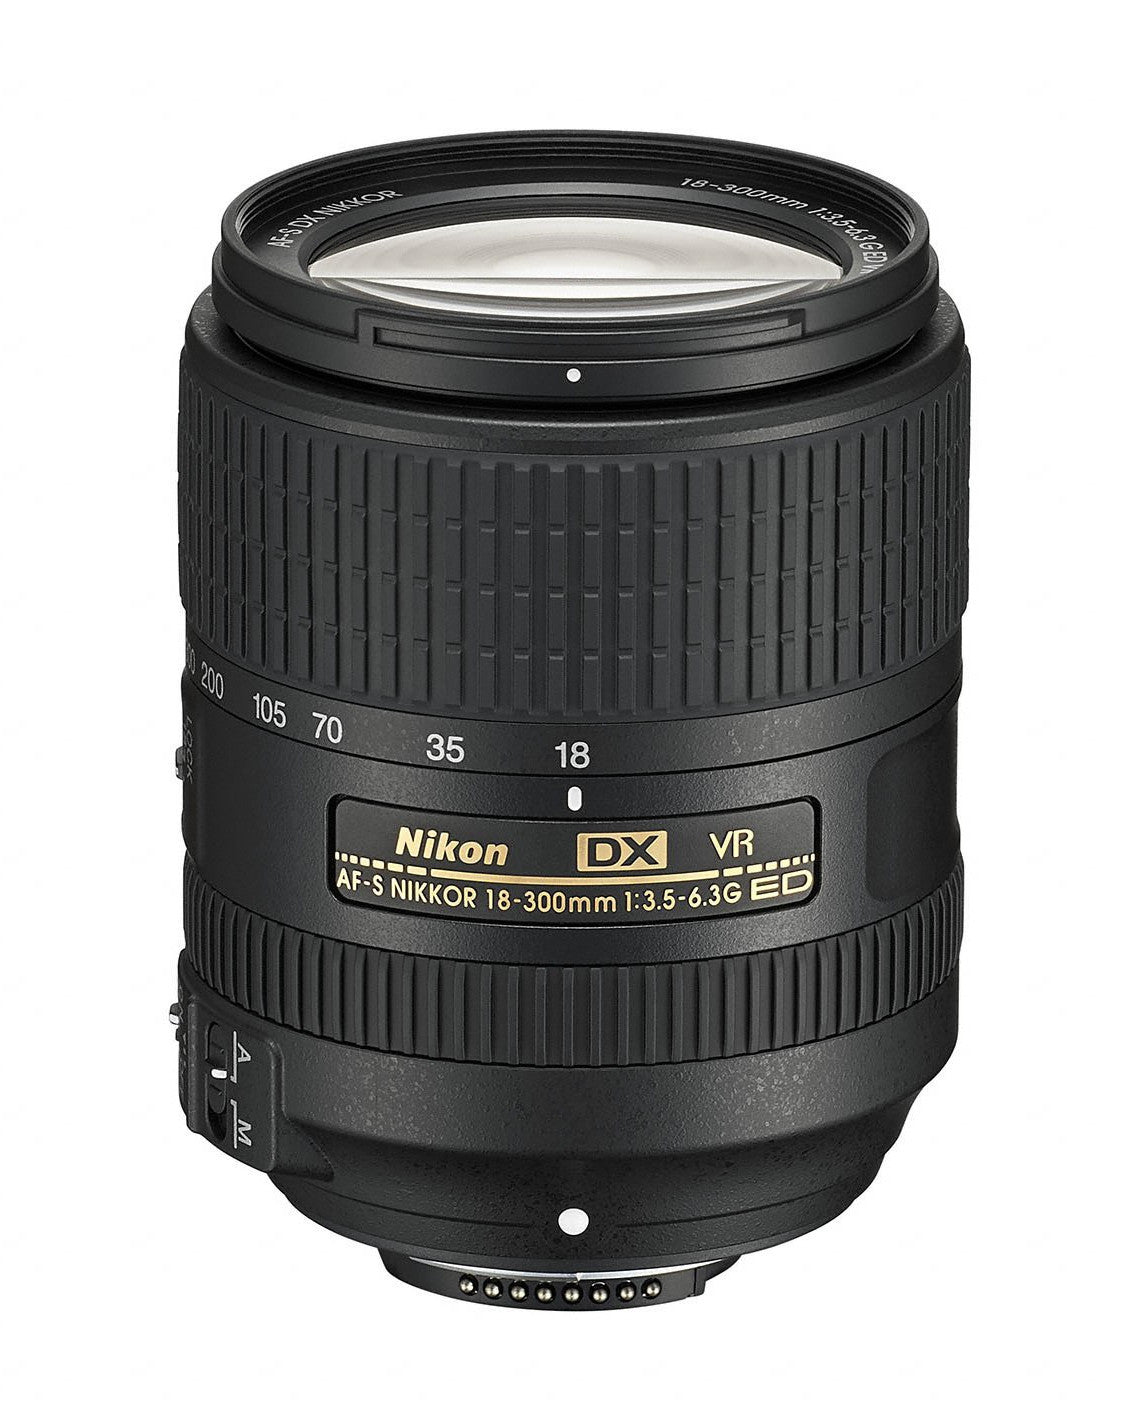 Nikon 18-300mm f/3.5-6.3G ED AF-S DX VR Nikkor Lens, lenses slr lenses, Nikon - Pictureline 